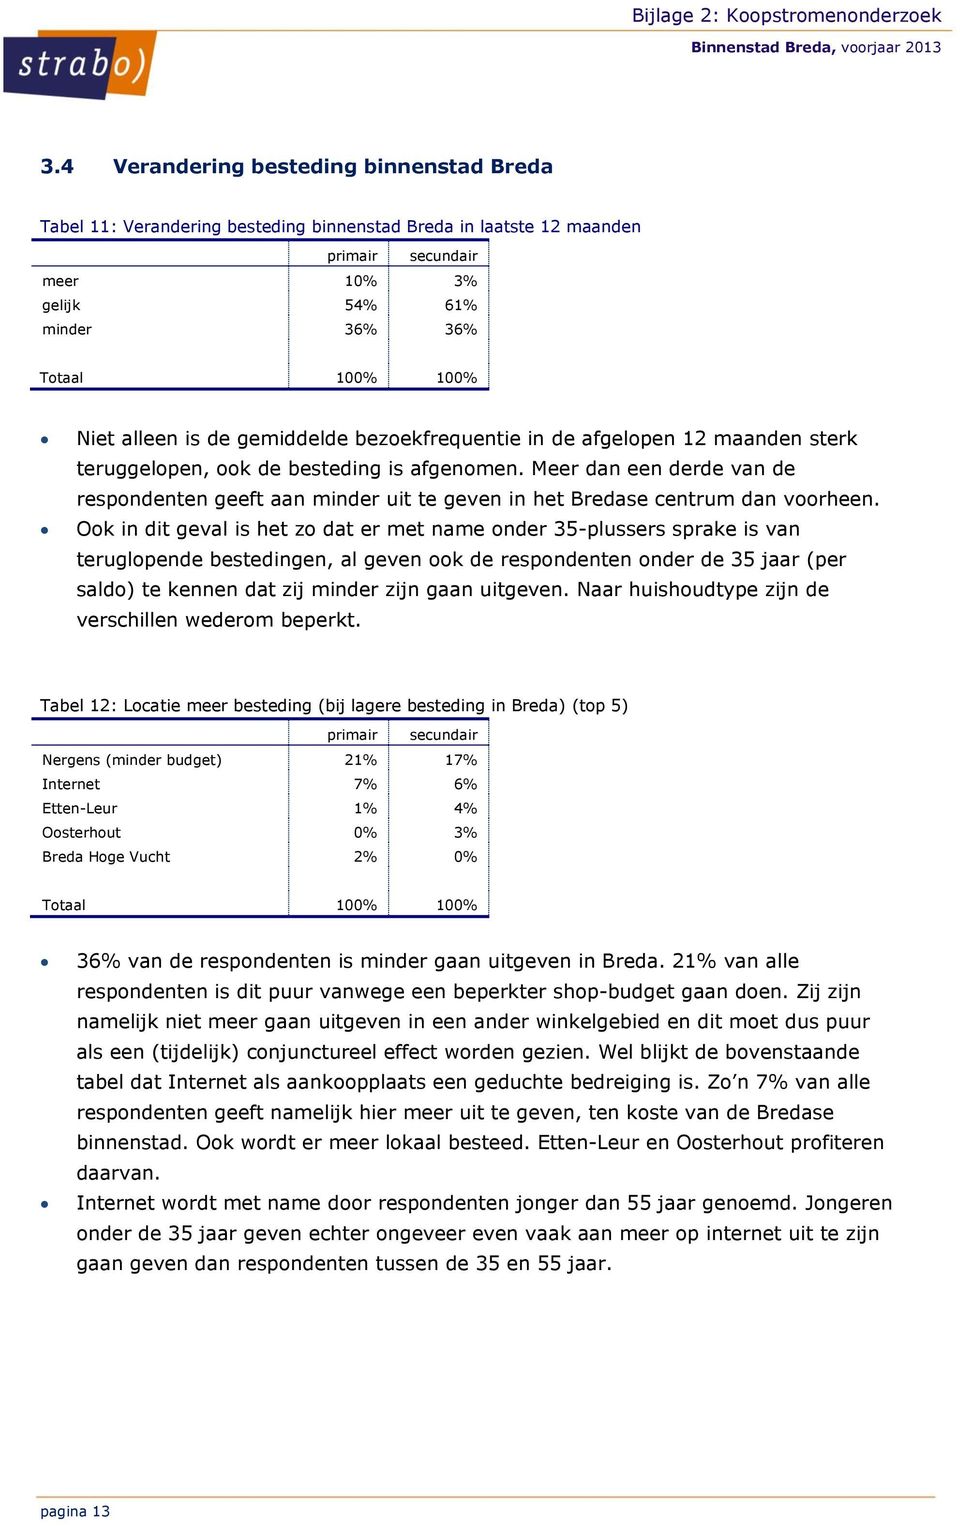 Meer dan een derde van de respondenten geeft aan minder uit te geven in het Bredase centrum dan voorheen.